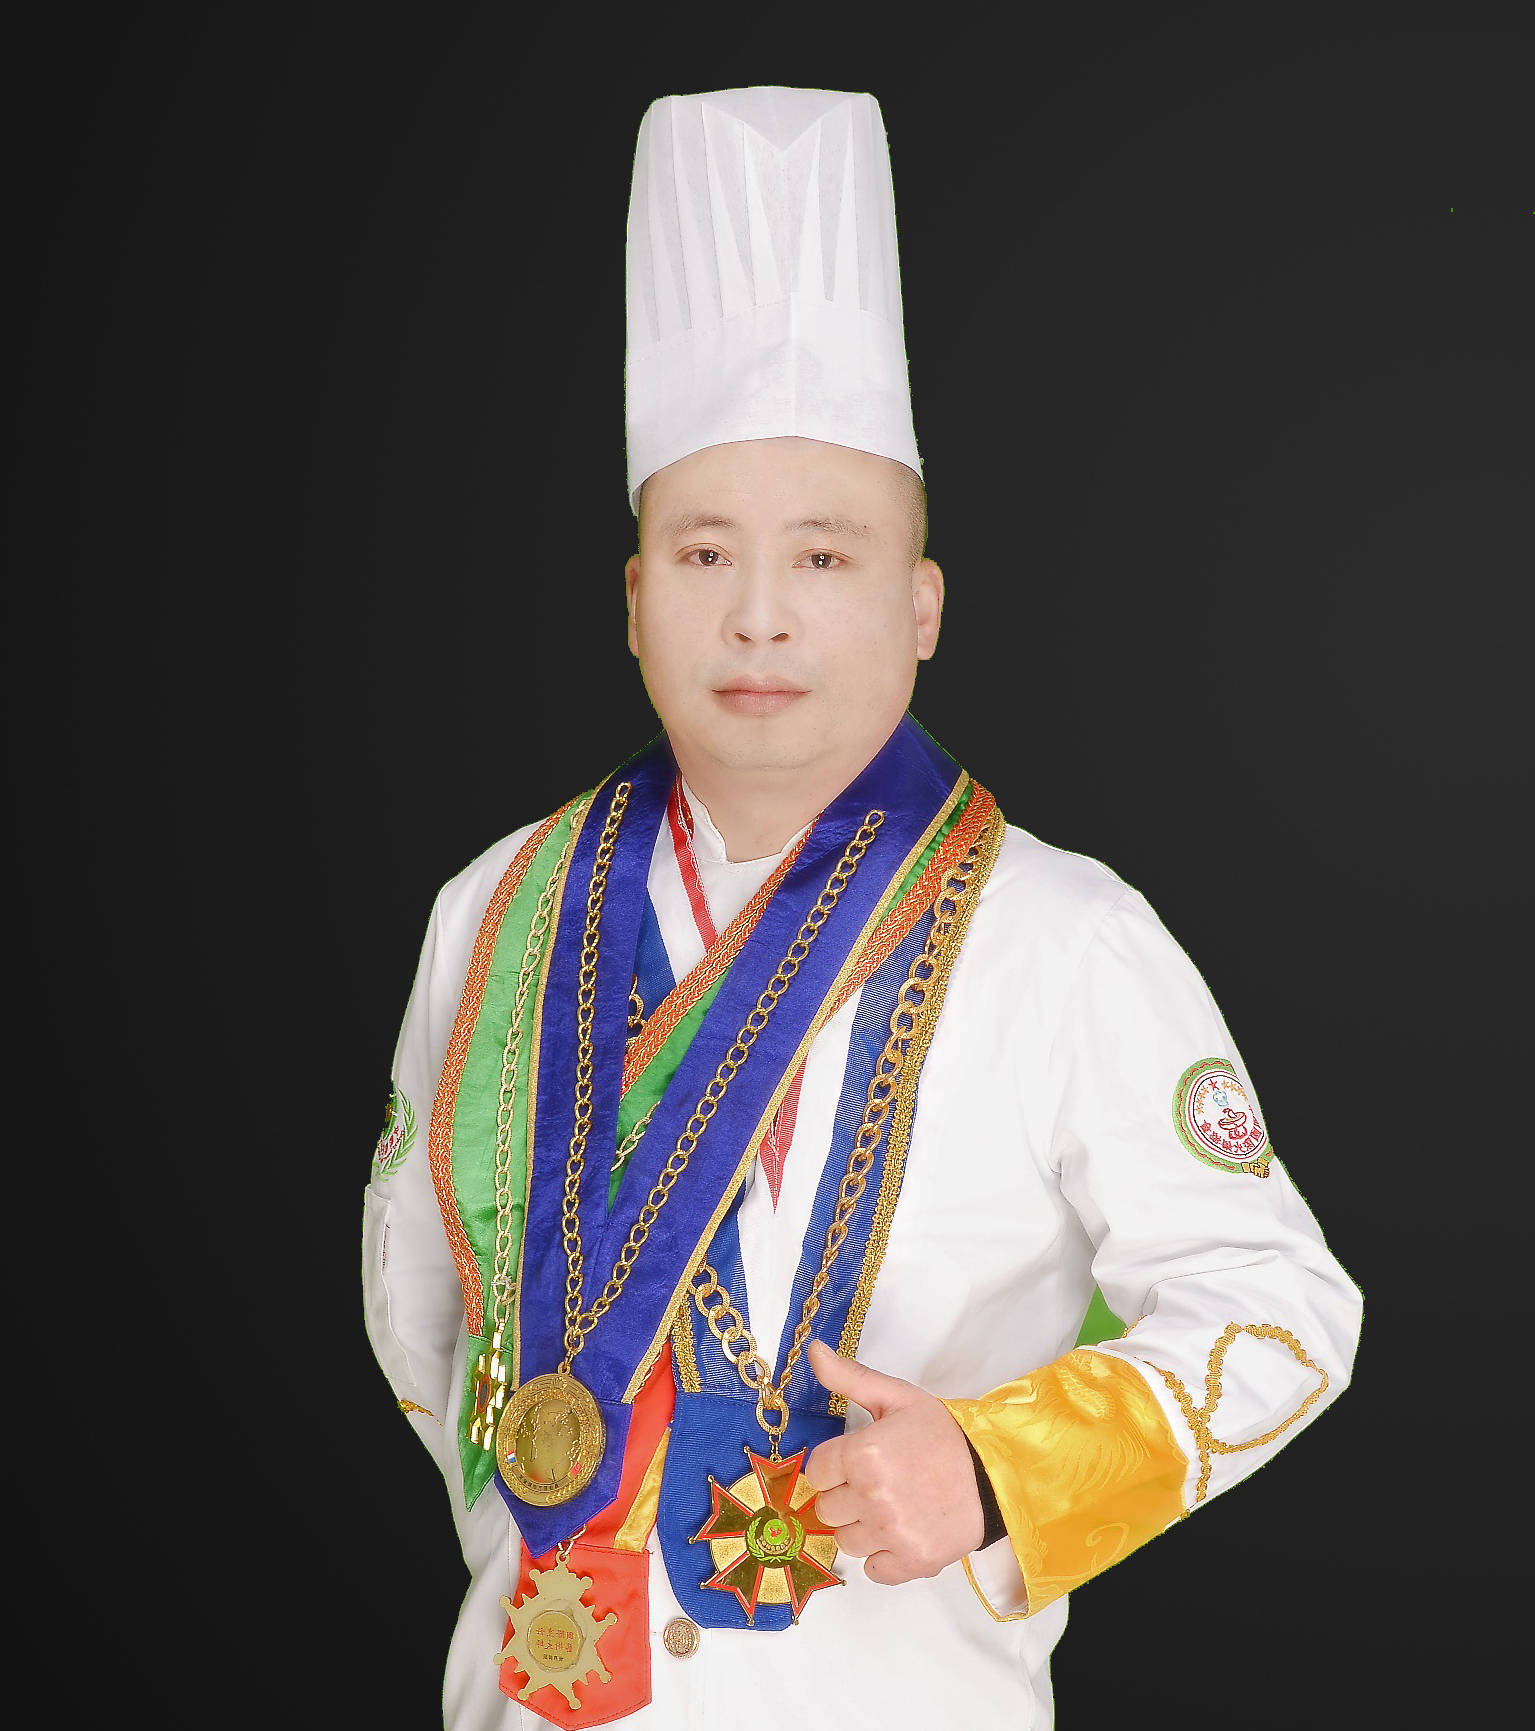 中国烹饪大师王强：卤水让各种平淡无奇卤制品有了灵魂 